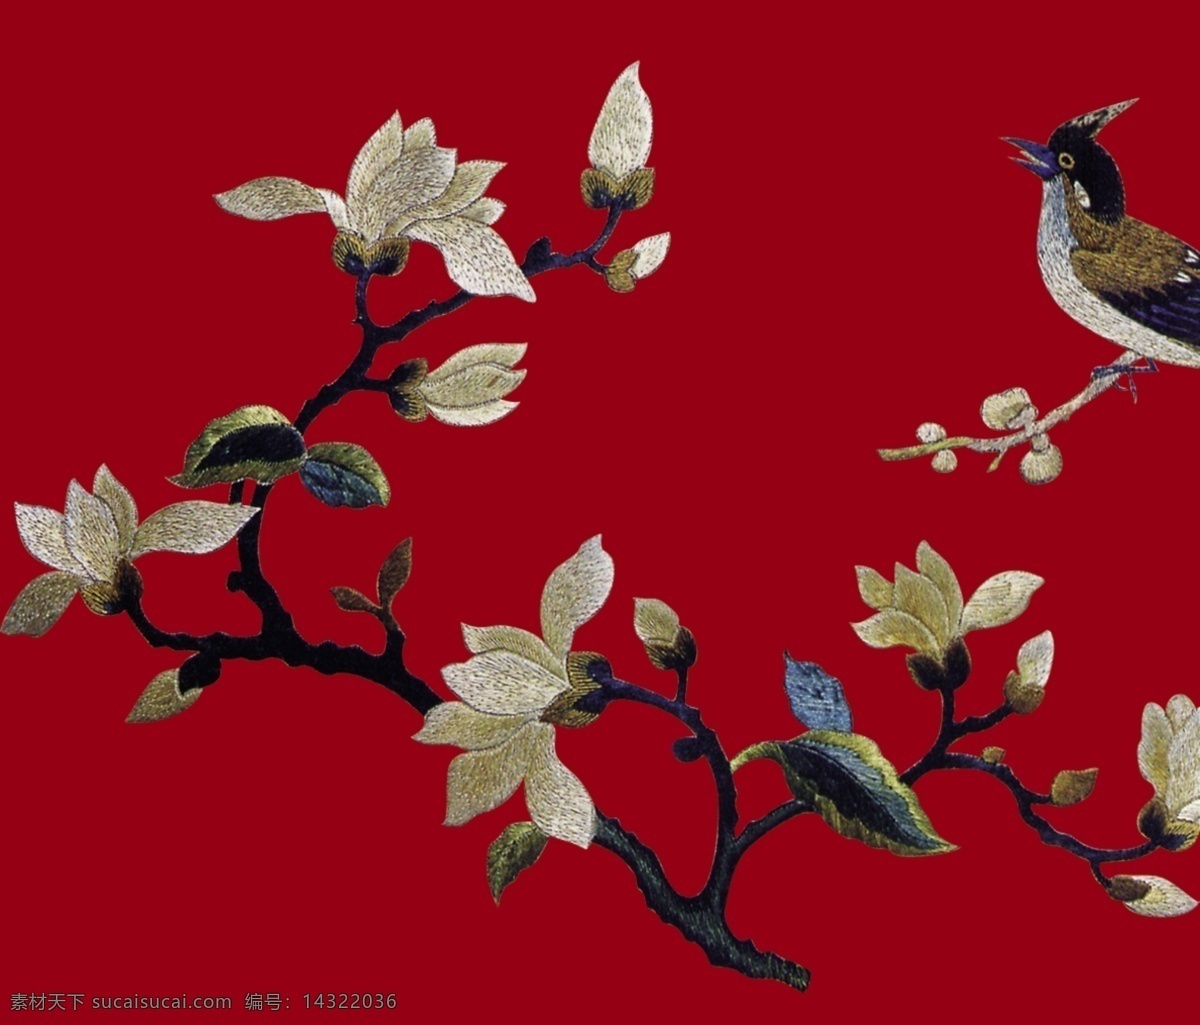 中国传统文化 传统设计素材 喜庆 喜鹊 红色背景 中华刺绣 民间艺术 古画 中国刺绣 十字绣 中国传统元素 传统文化 文化艺术